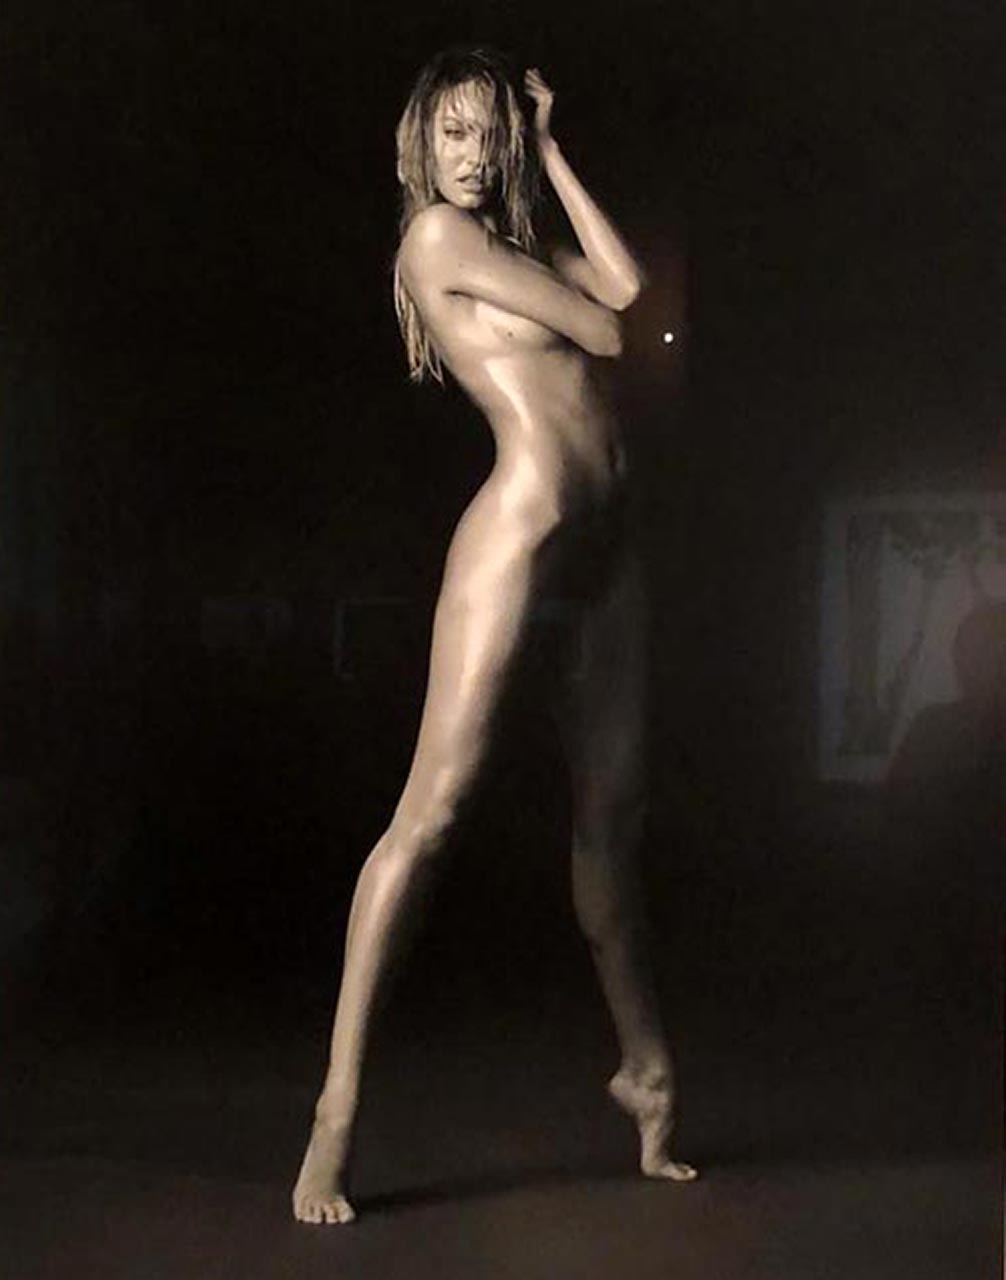 Candice Swanepoel Naked On Paparazzi Photos Scandal Planet